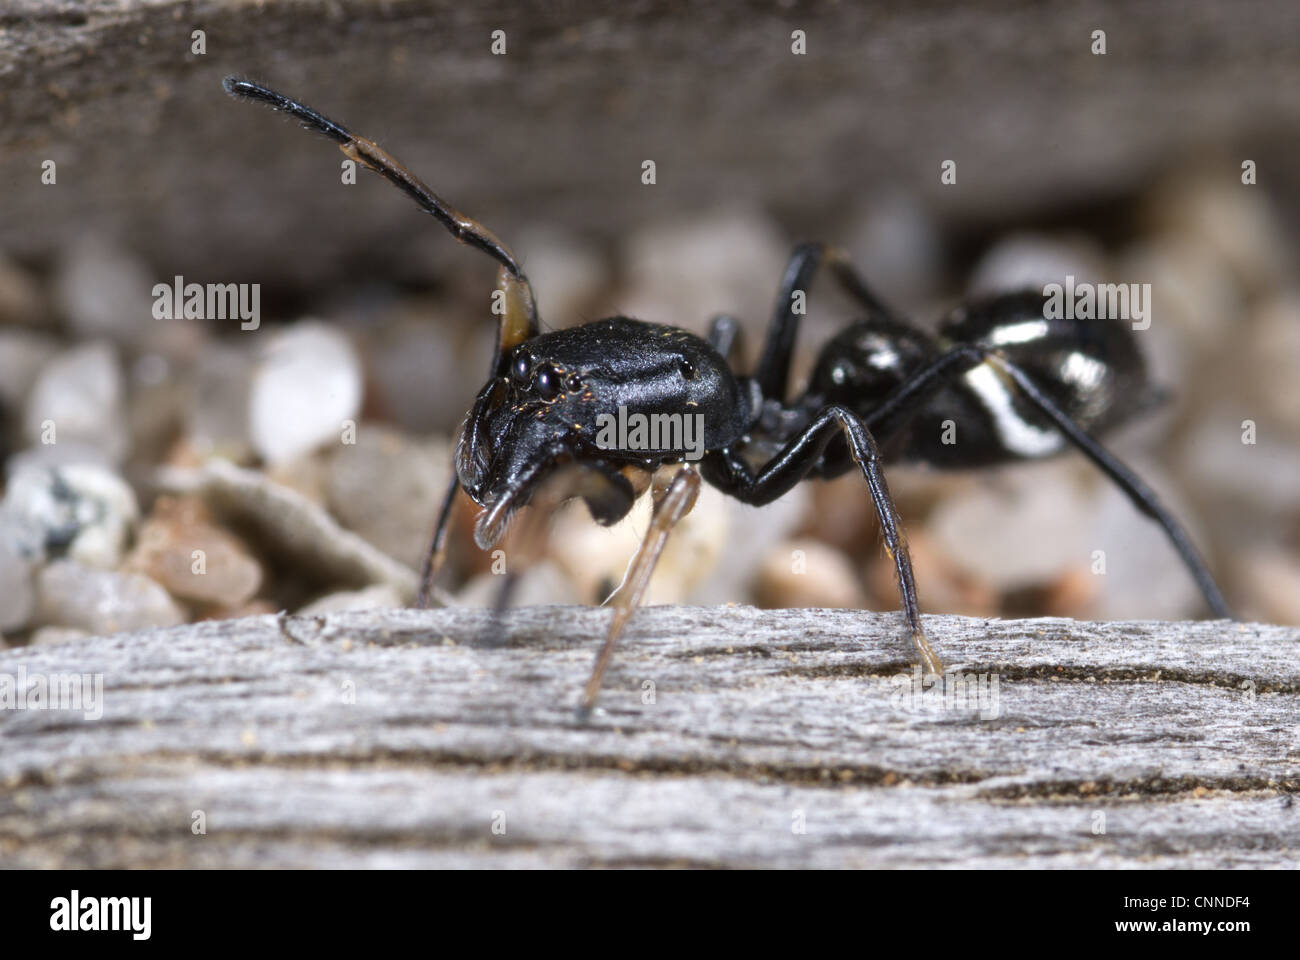 Ant-comme mutilloides Leptorchestes araignée sauteuse de nourriture chez les femmes adultes sur la plage près de la Plage de rondinara journal Corse France peut Banque D'Images